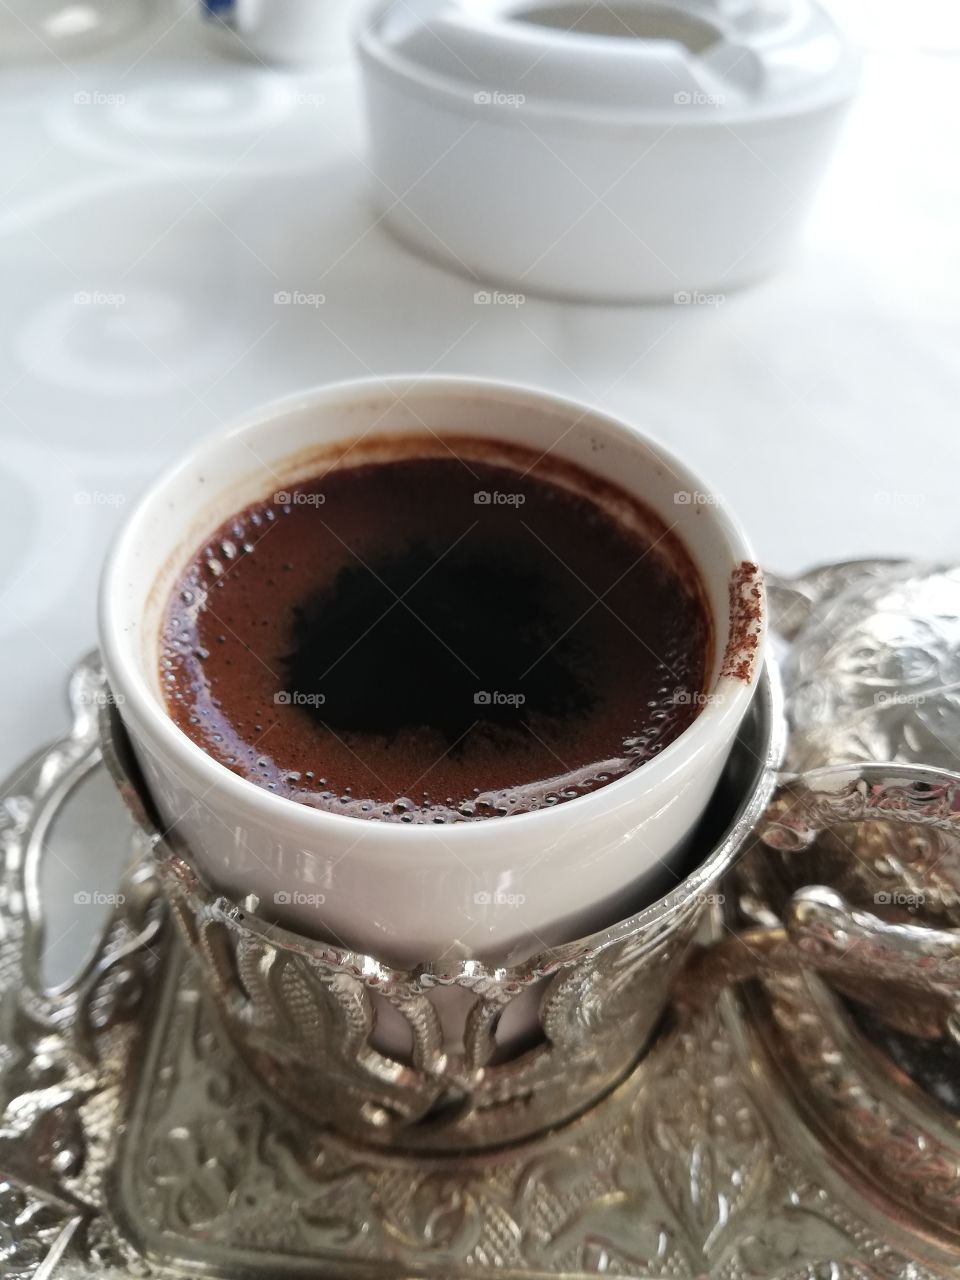 Turkish coffee in Bulgaria